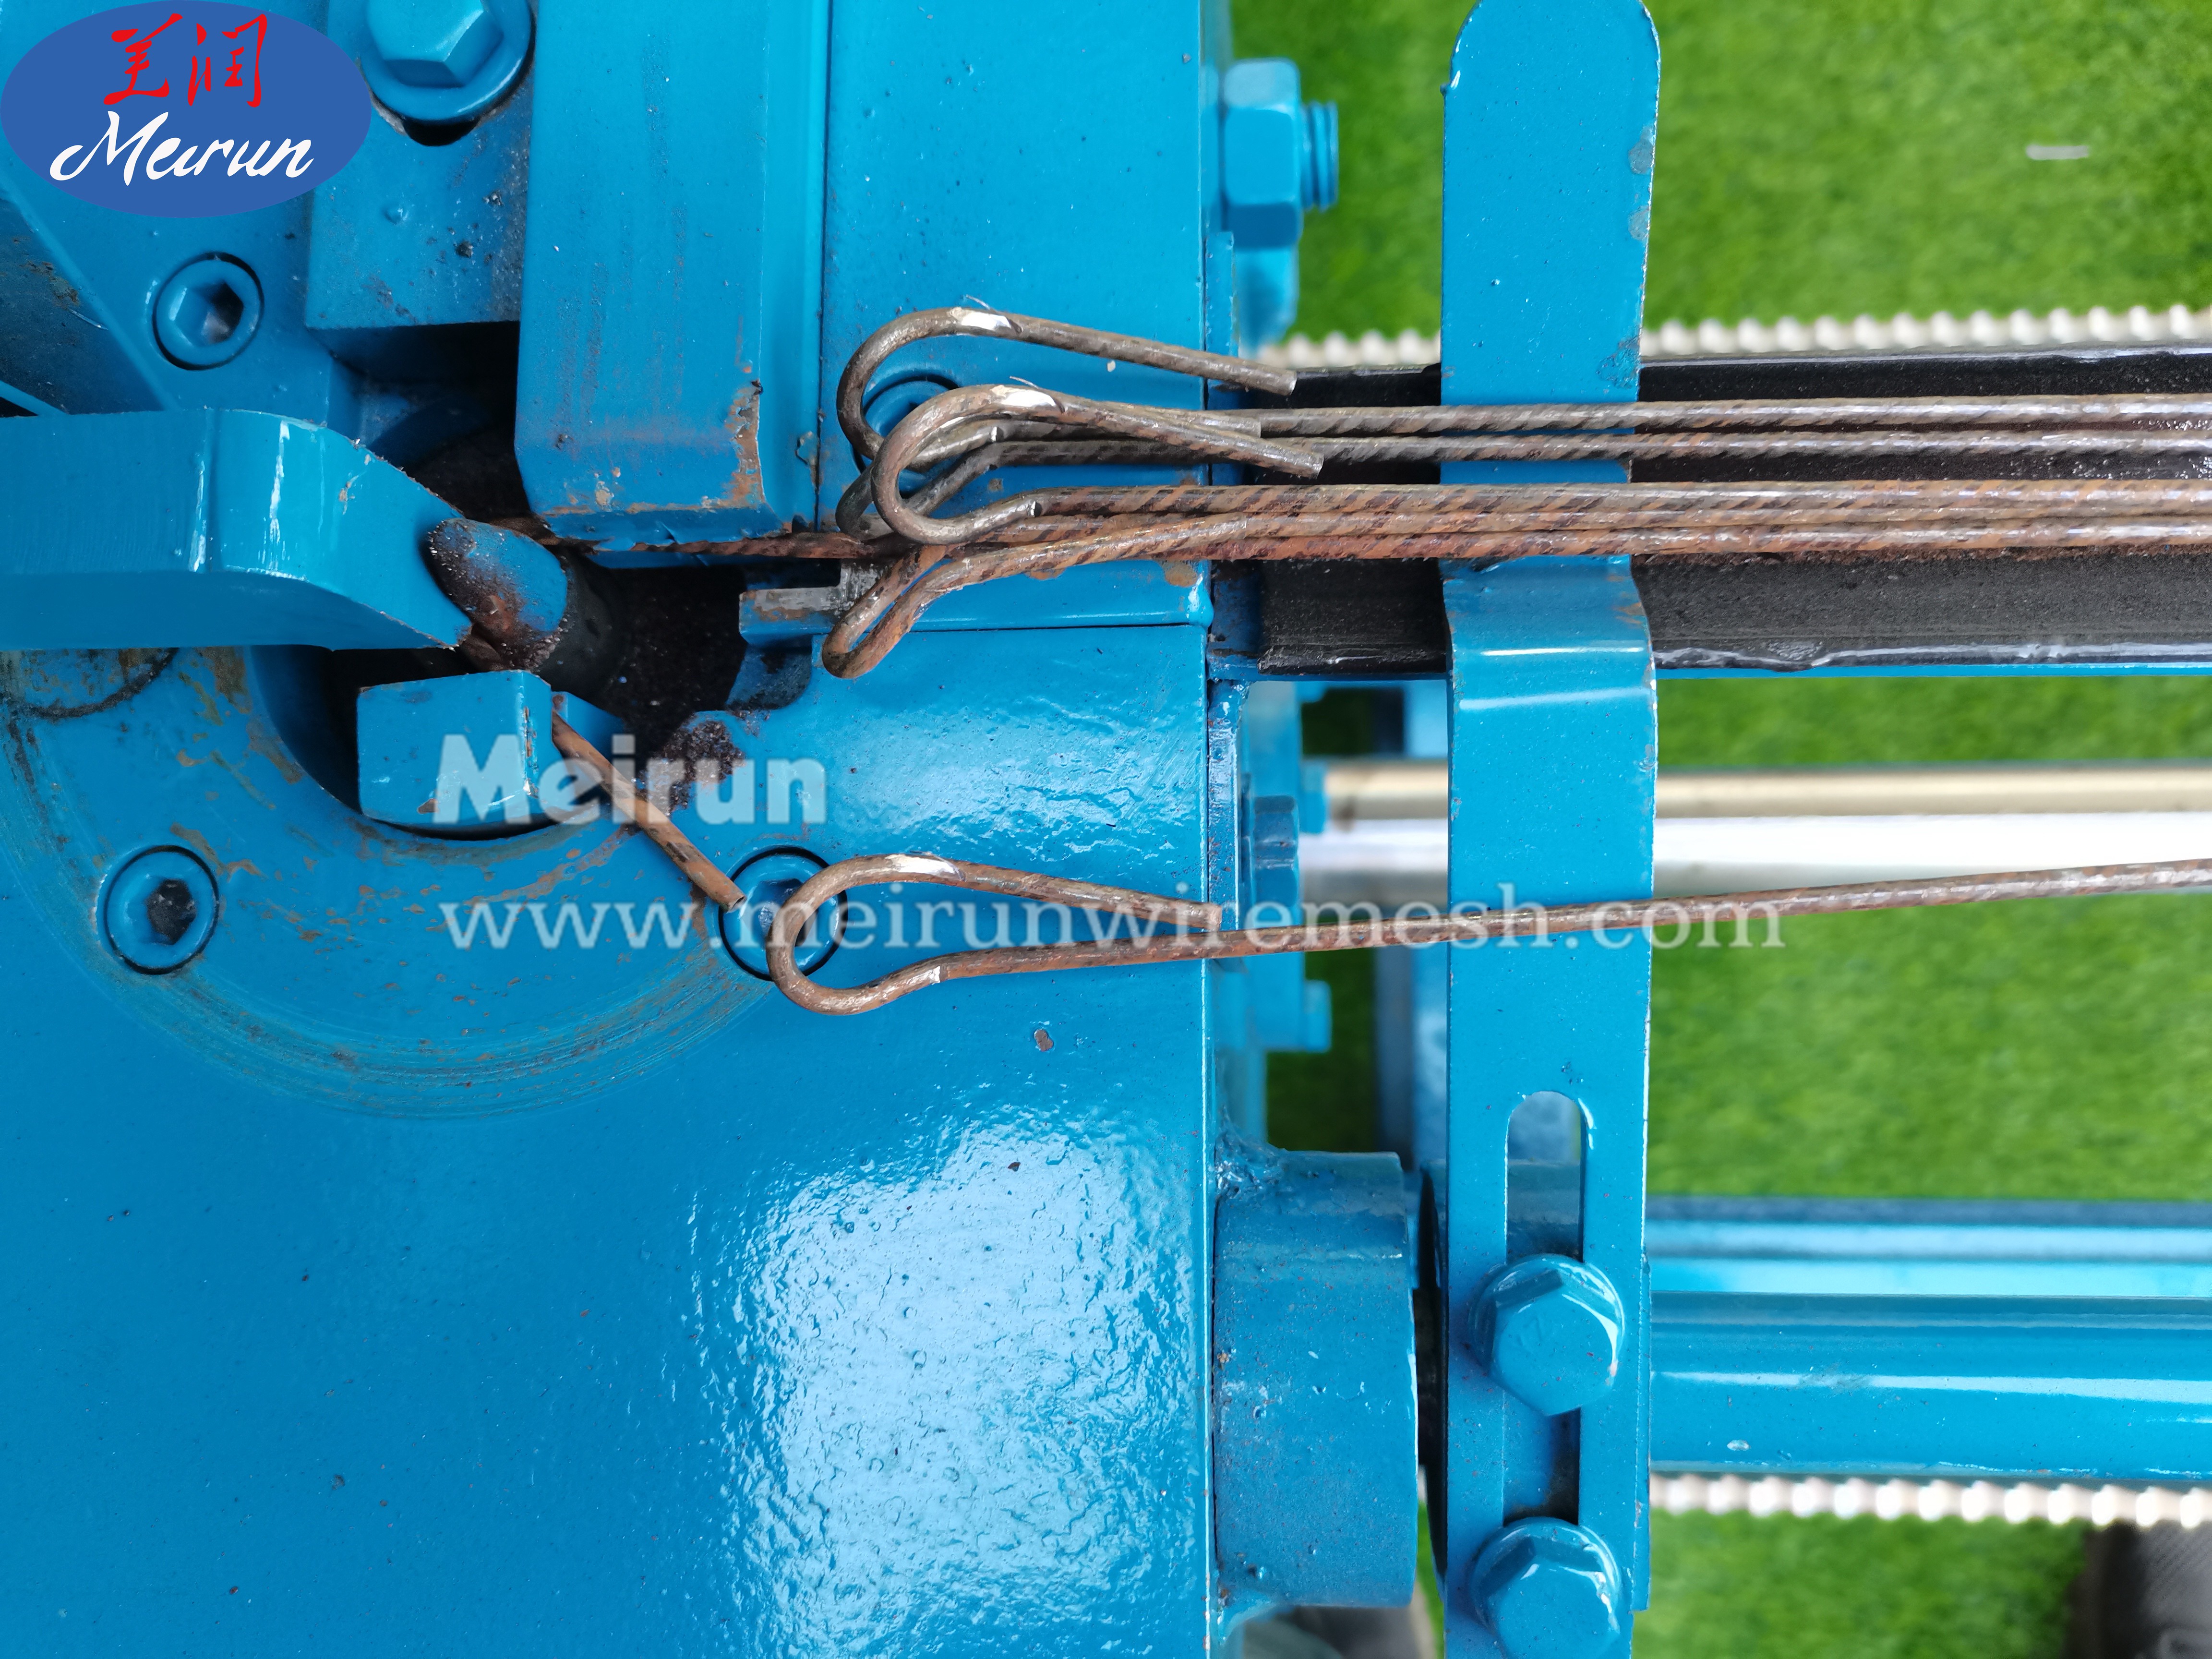 High Safety Level Automatic Galvanized Wire Cotton Bale Tie Wire Machine Binding Wire Loop Tie Wire Machine